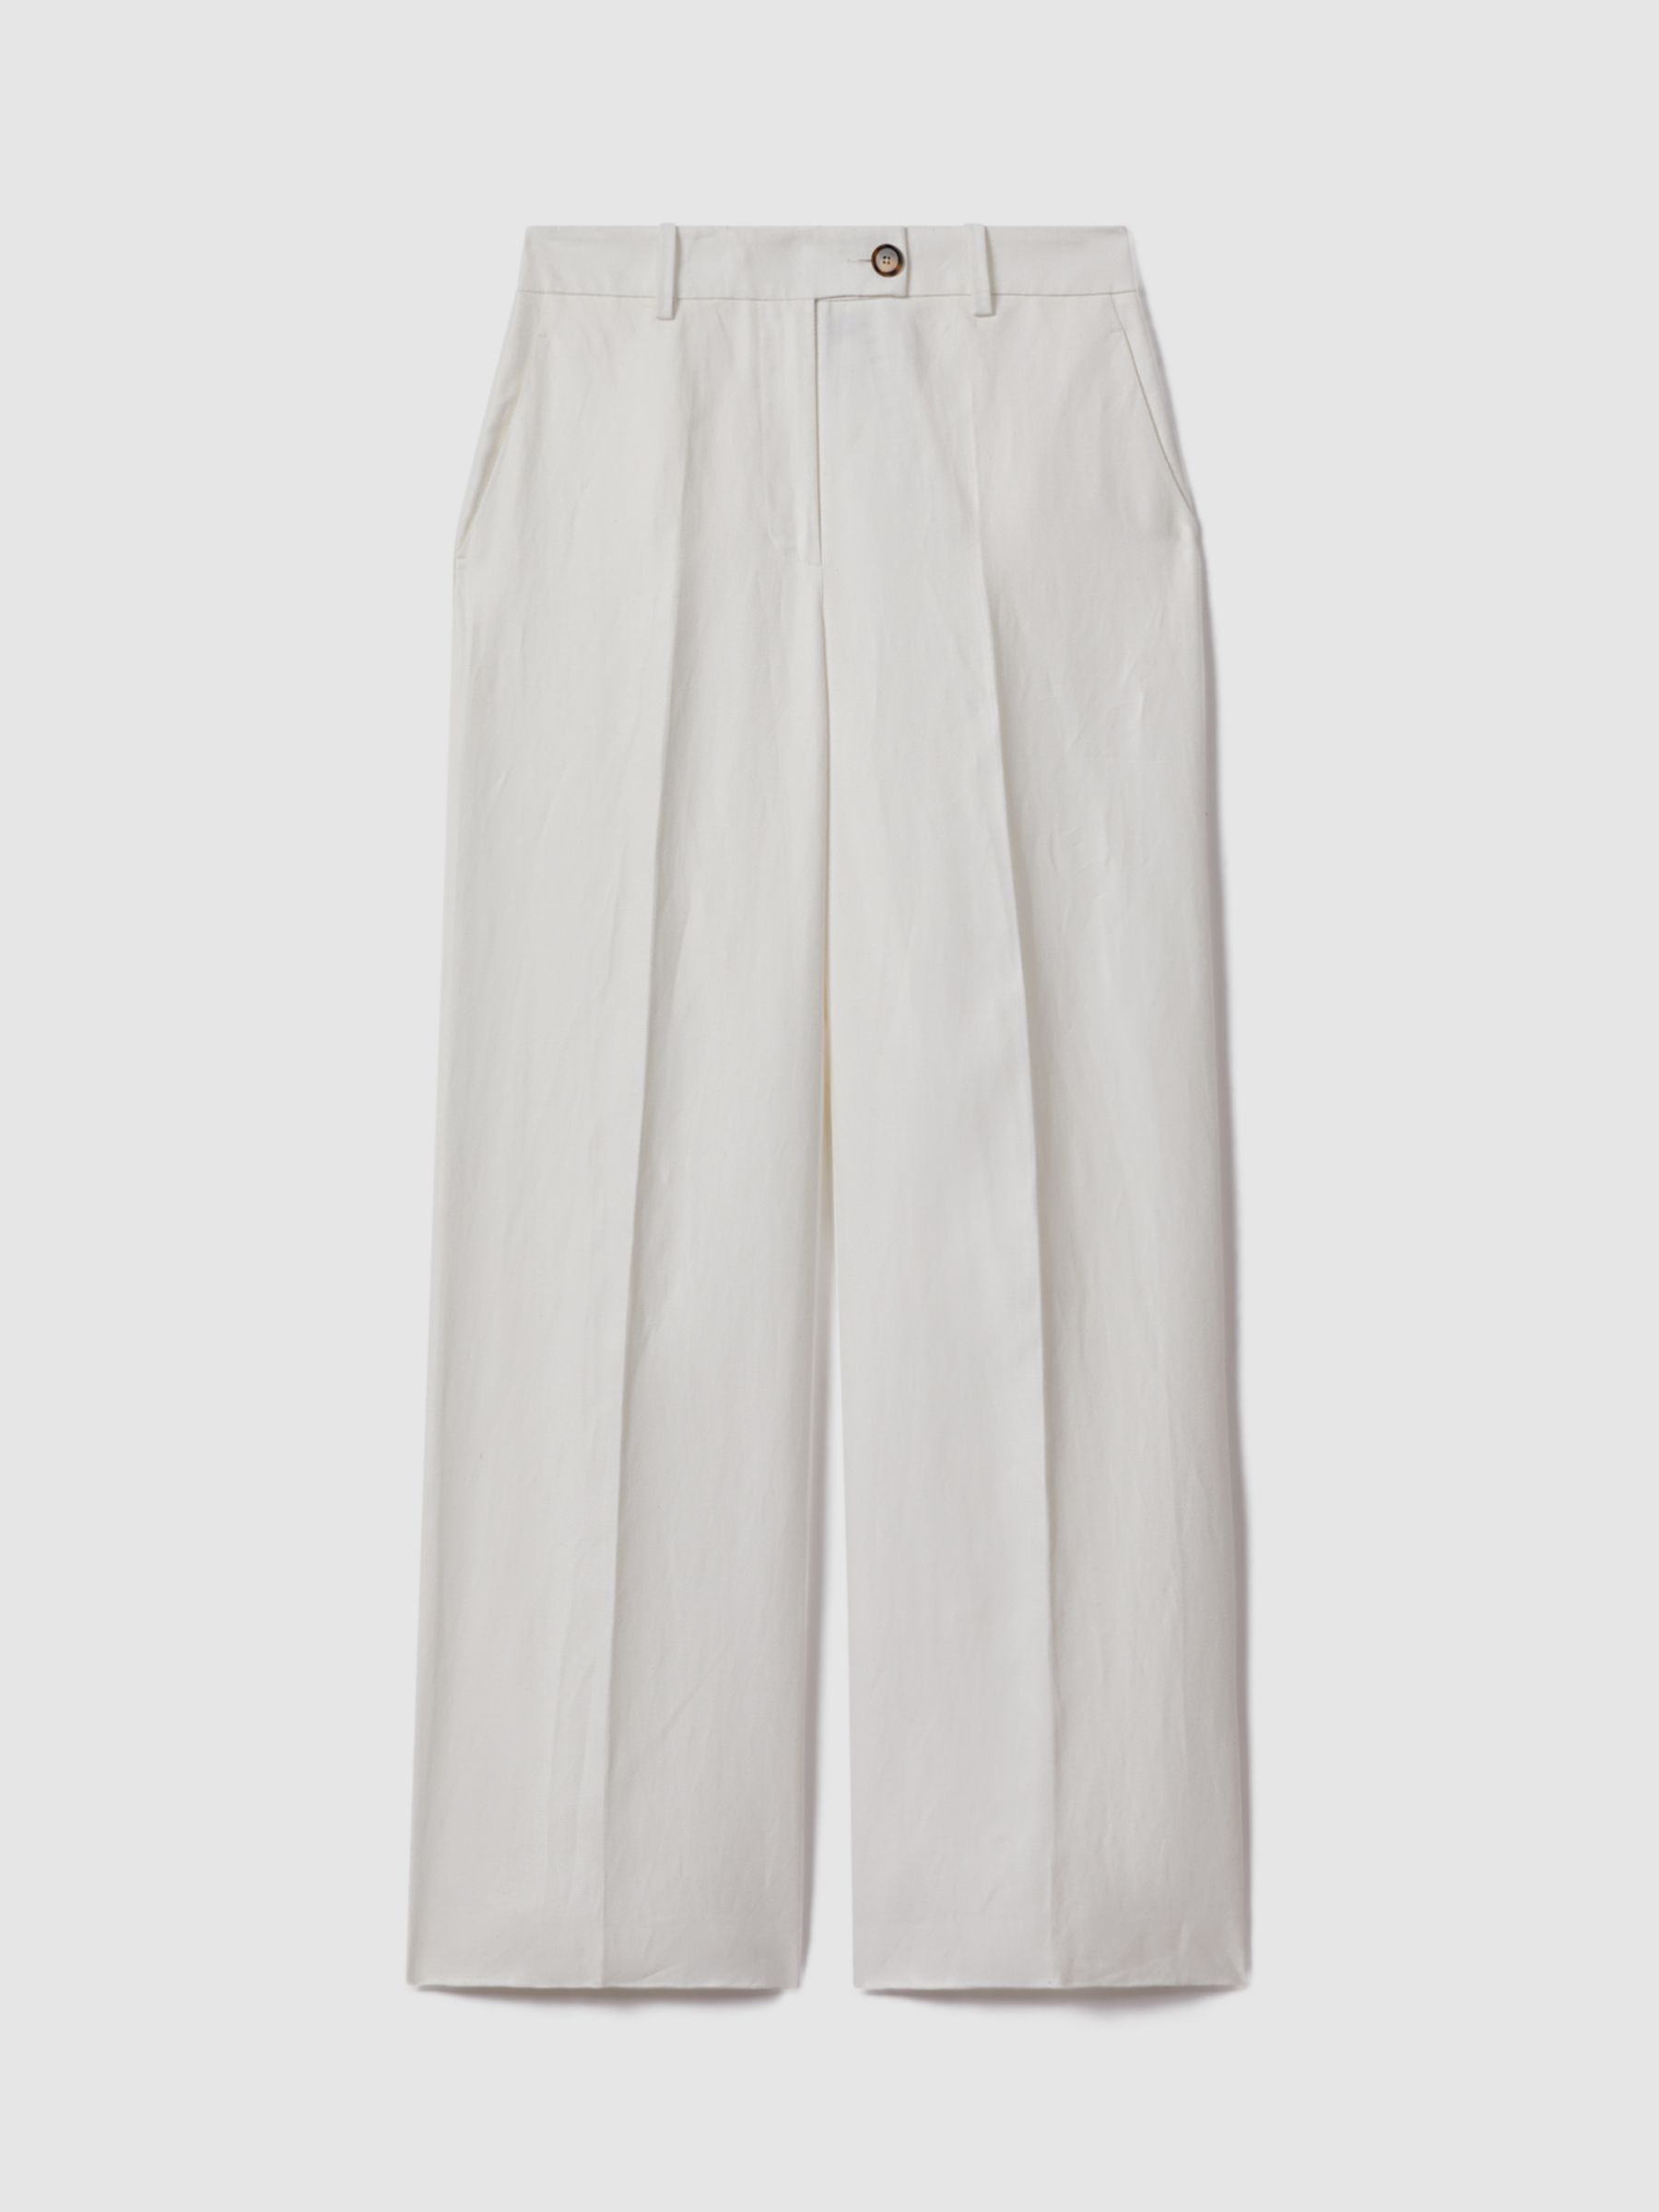 Reiss Petite Lori Linen Blend Wide Leg Trousers, White, 6